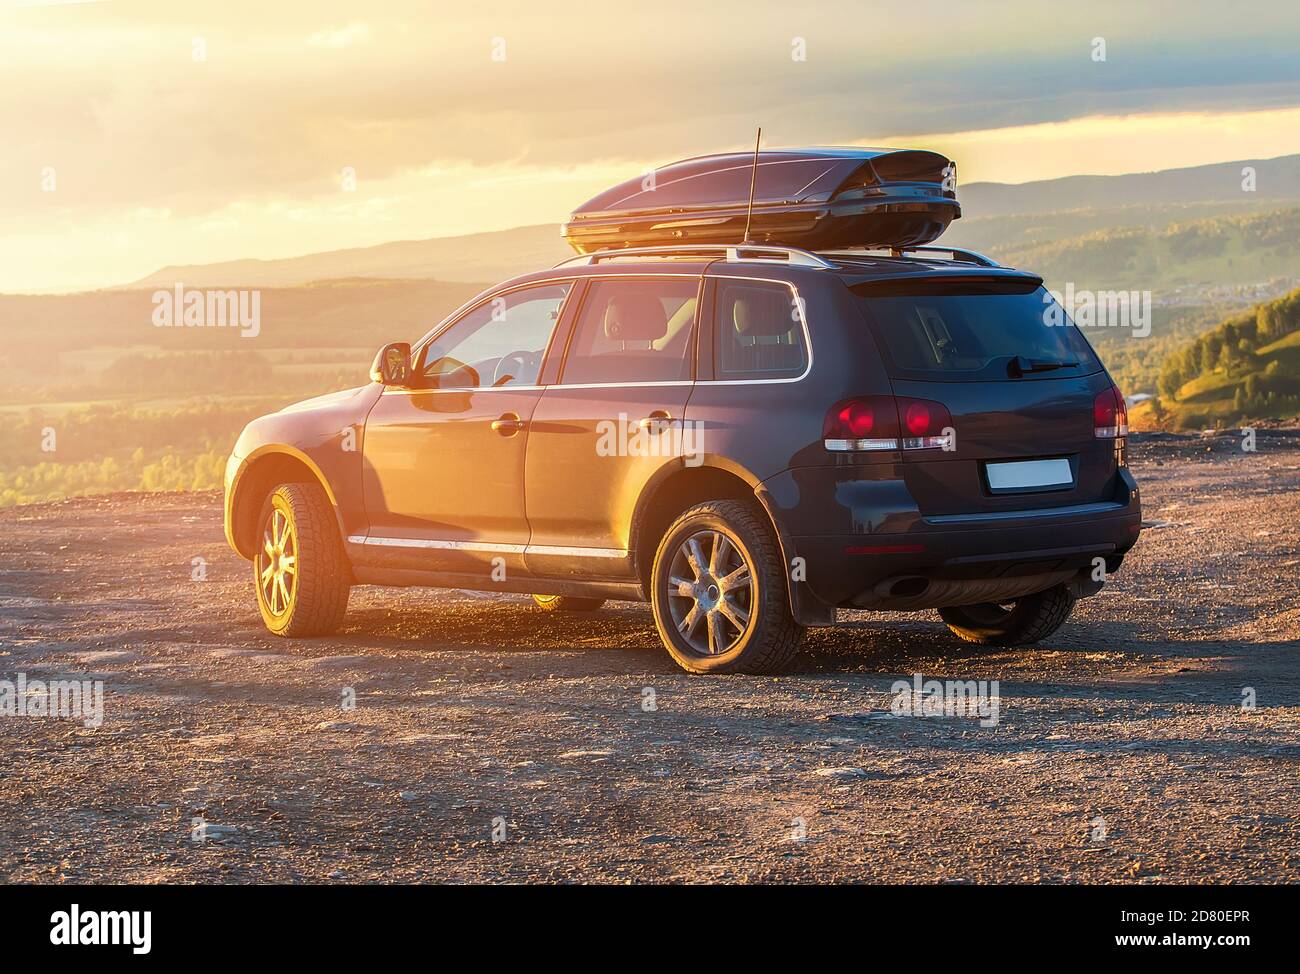 Fahrt im SUV in hügeligem Gelände bei Sonnenuntergang Stockfoto